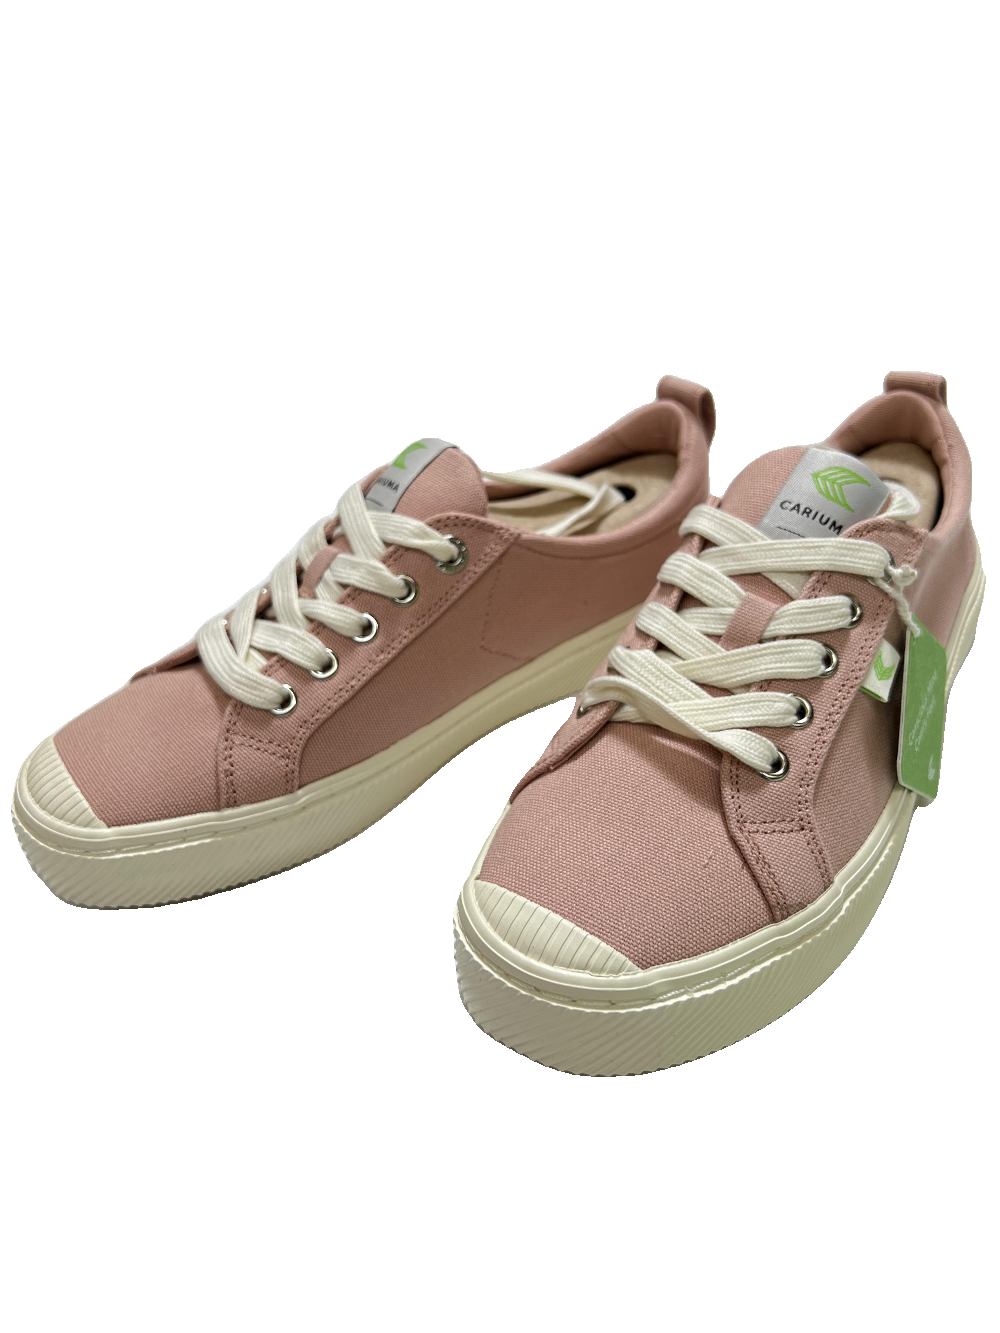 Cariuma - Pink Low Top Sneakers